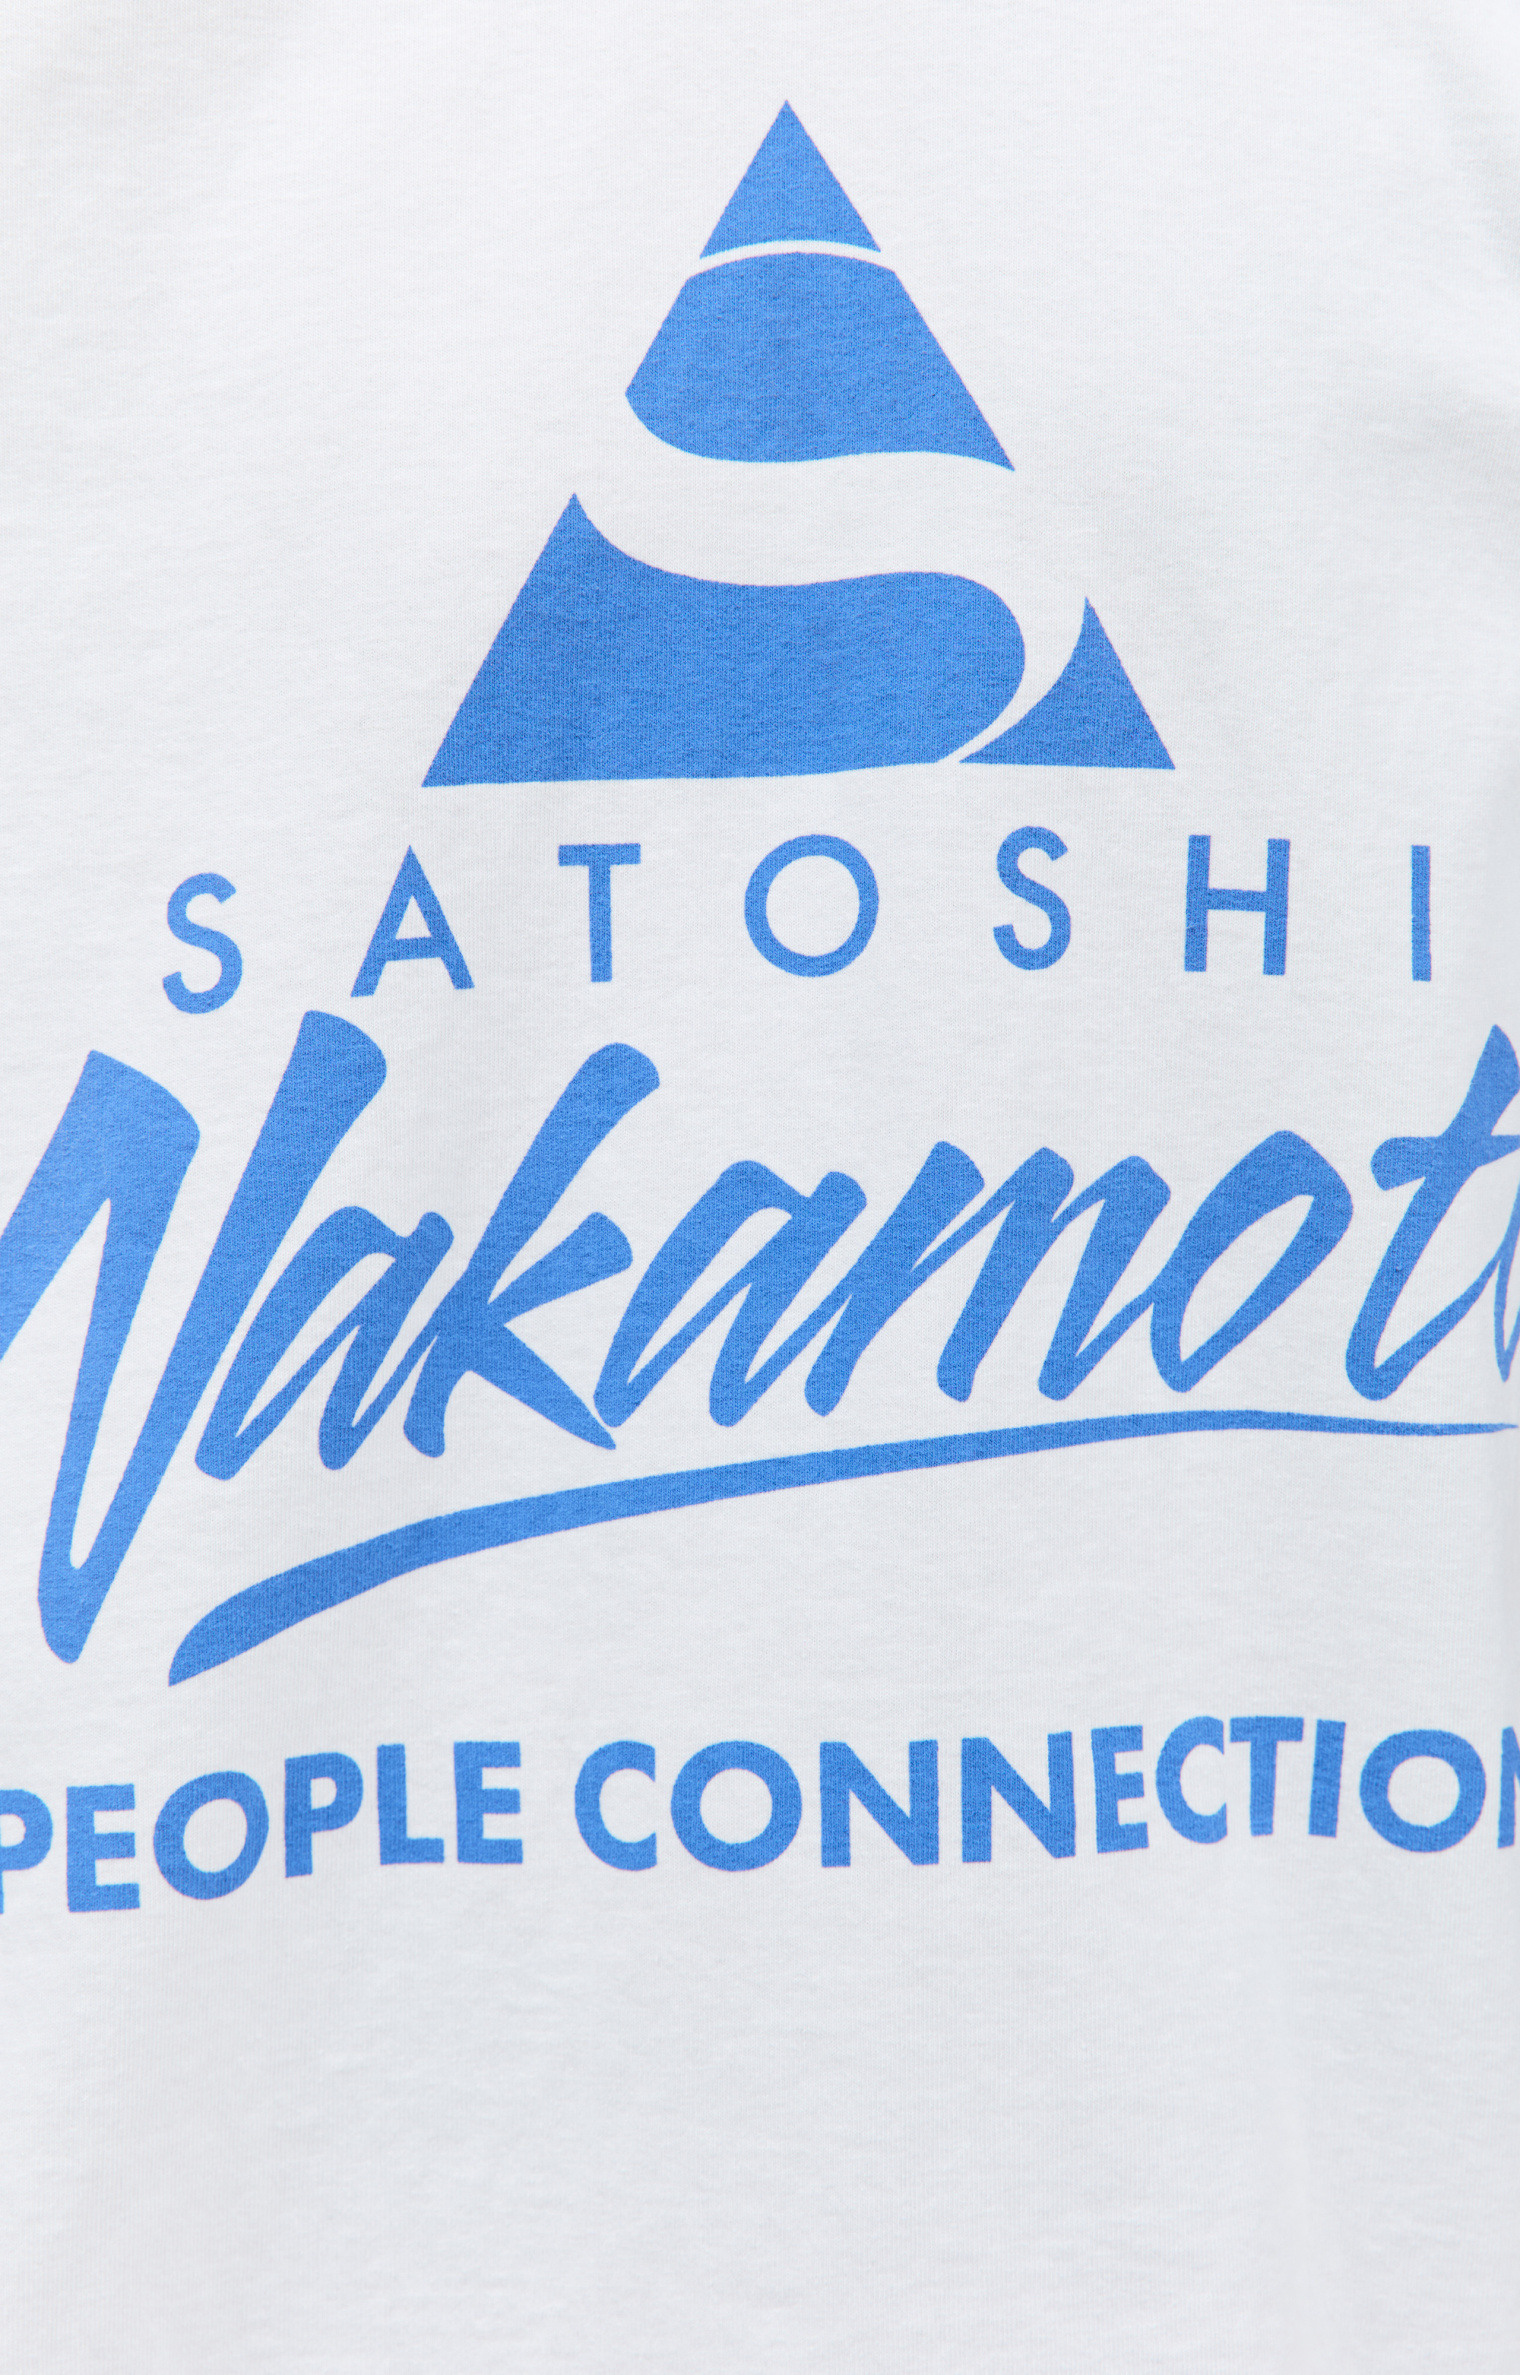 Satoshi Nakamoto People Connection printed t-shirt